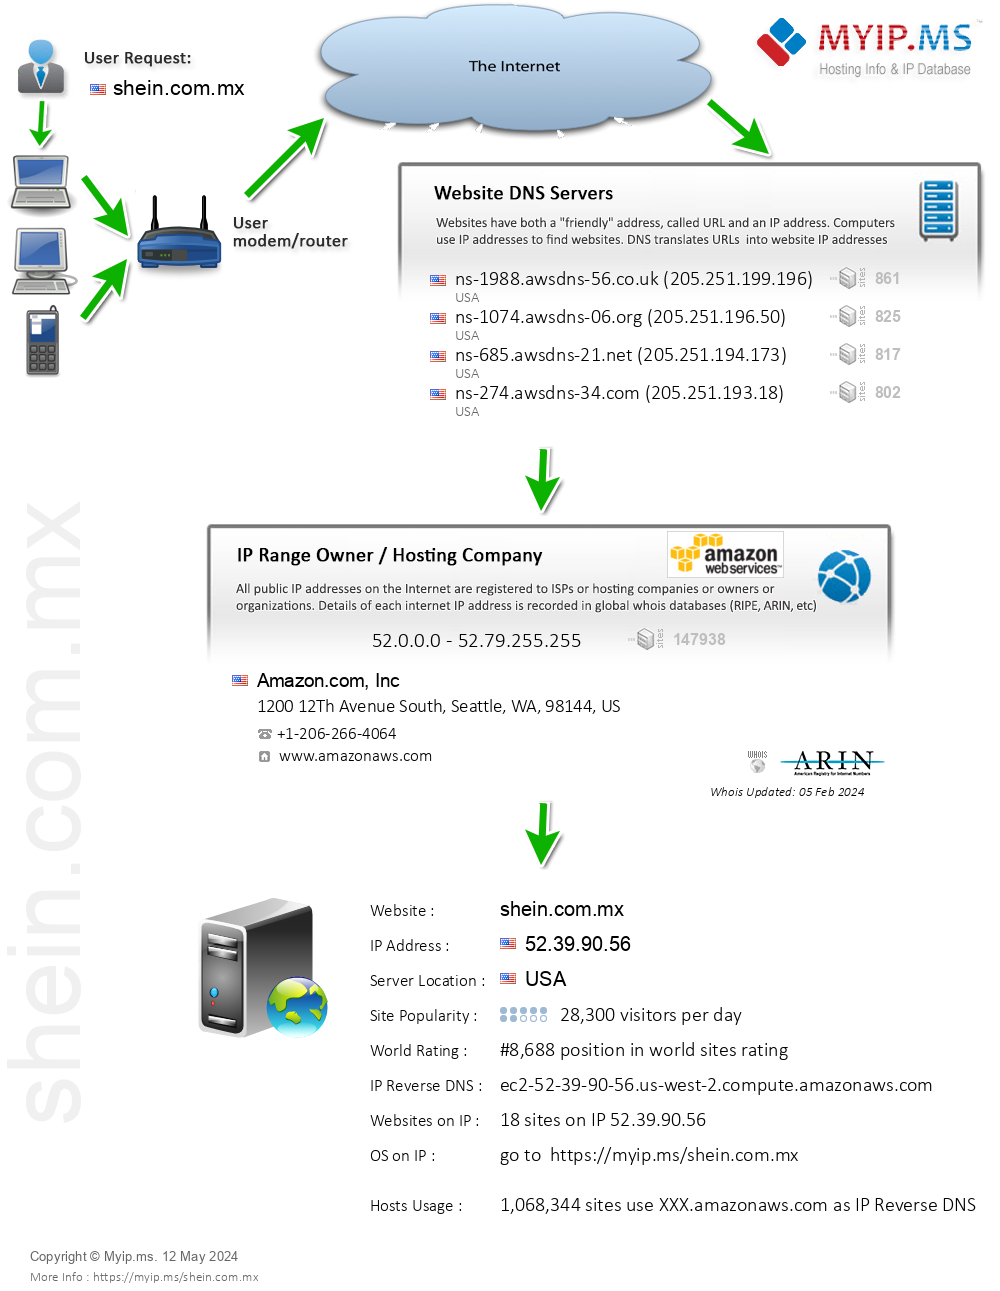 Shein.com.mx - Website Hosting Visual IP Diagram